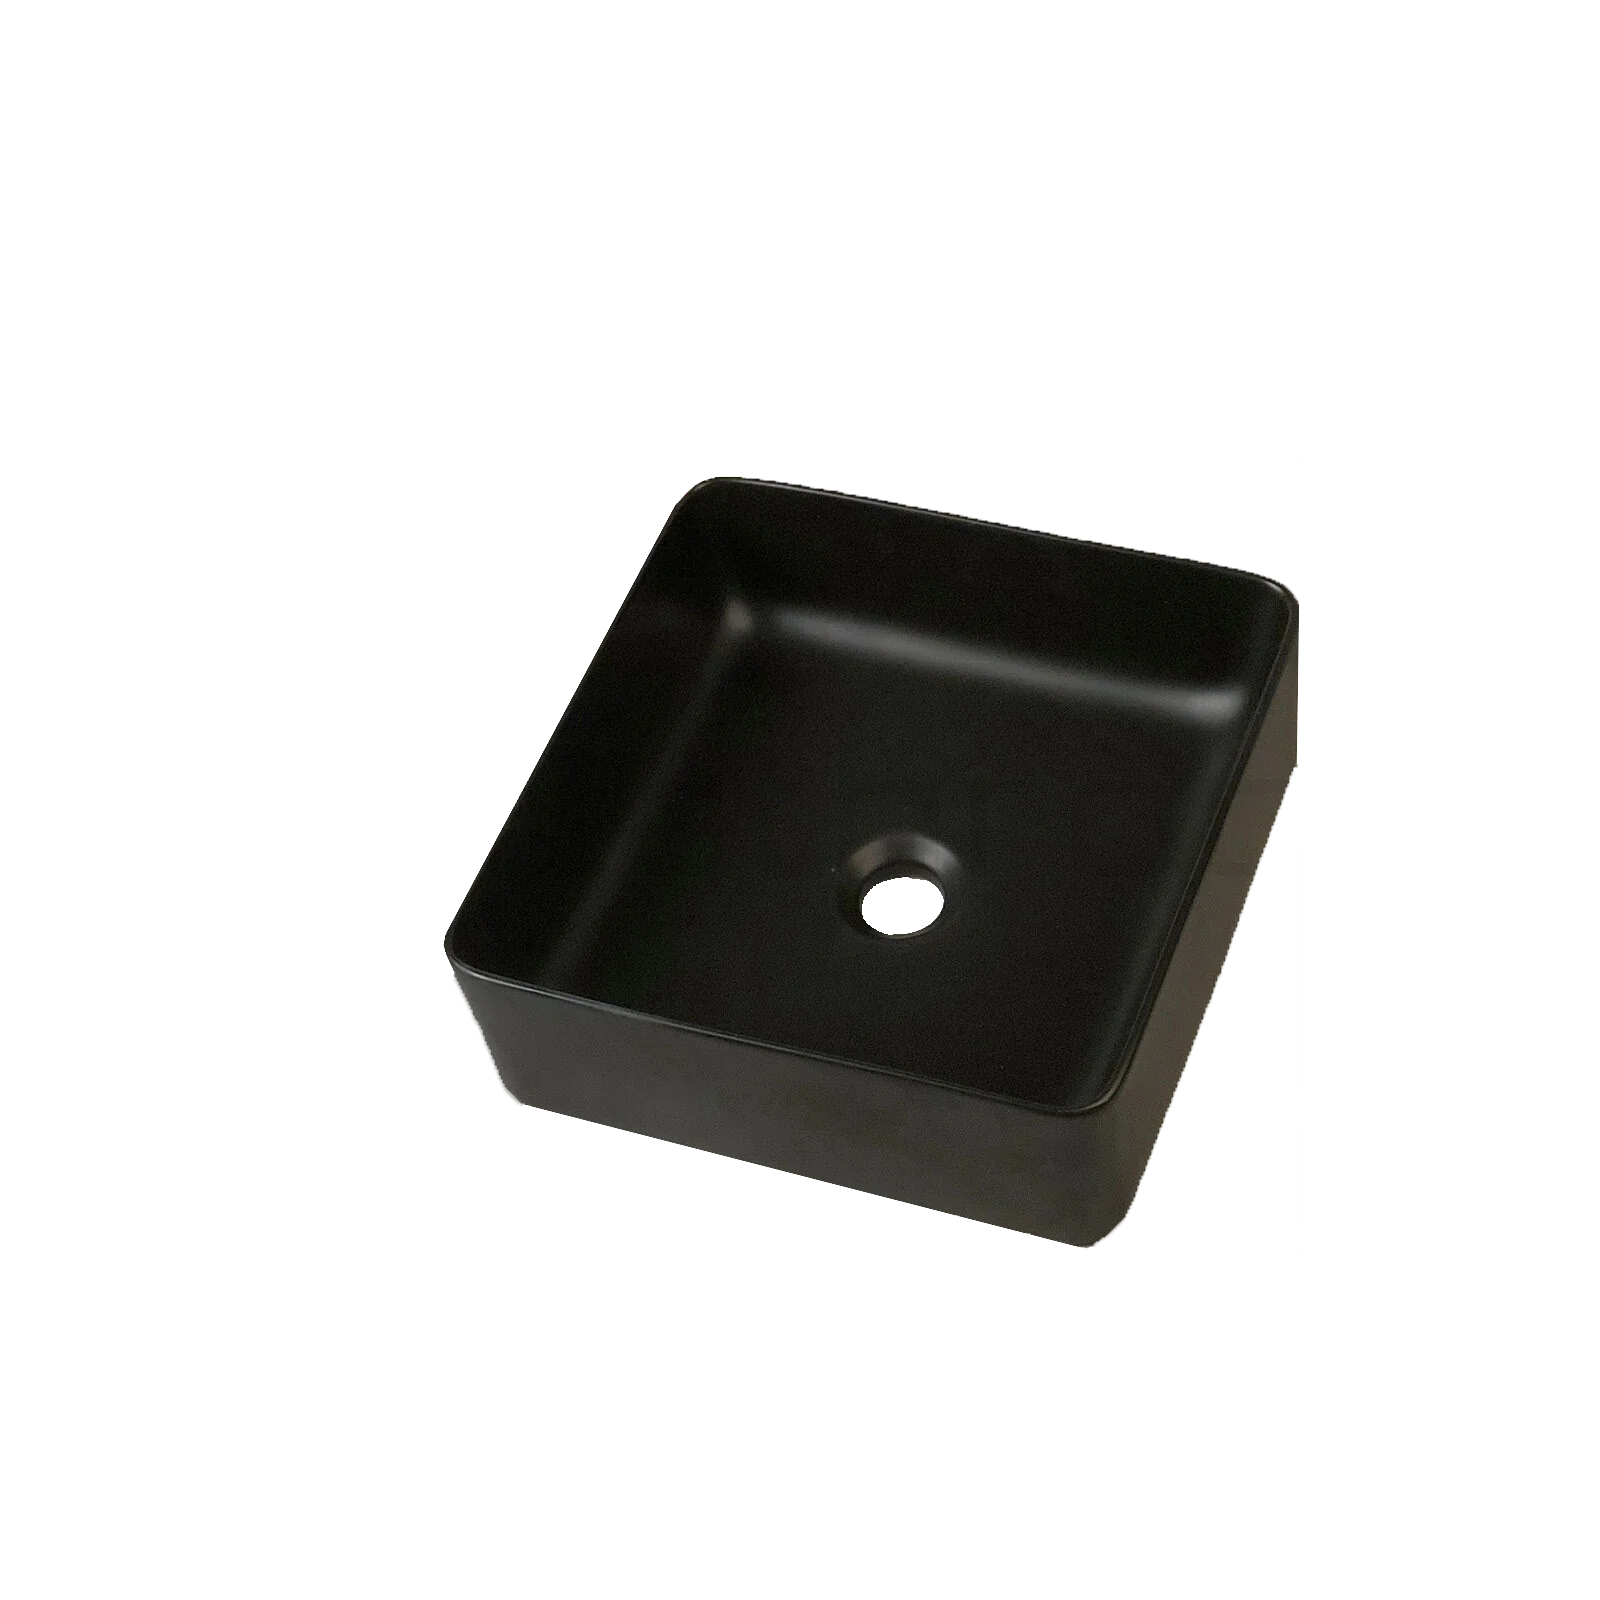 355*355*120 Matte black Above Counter Top Porcelain Basin Bathroom Vanity